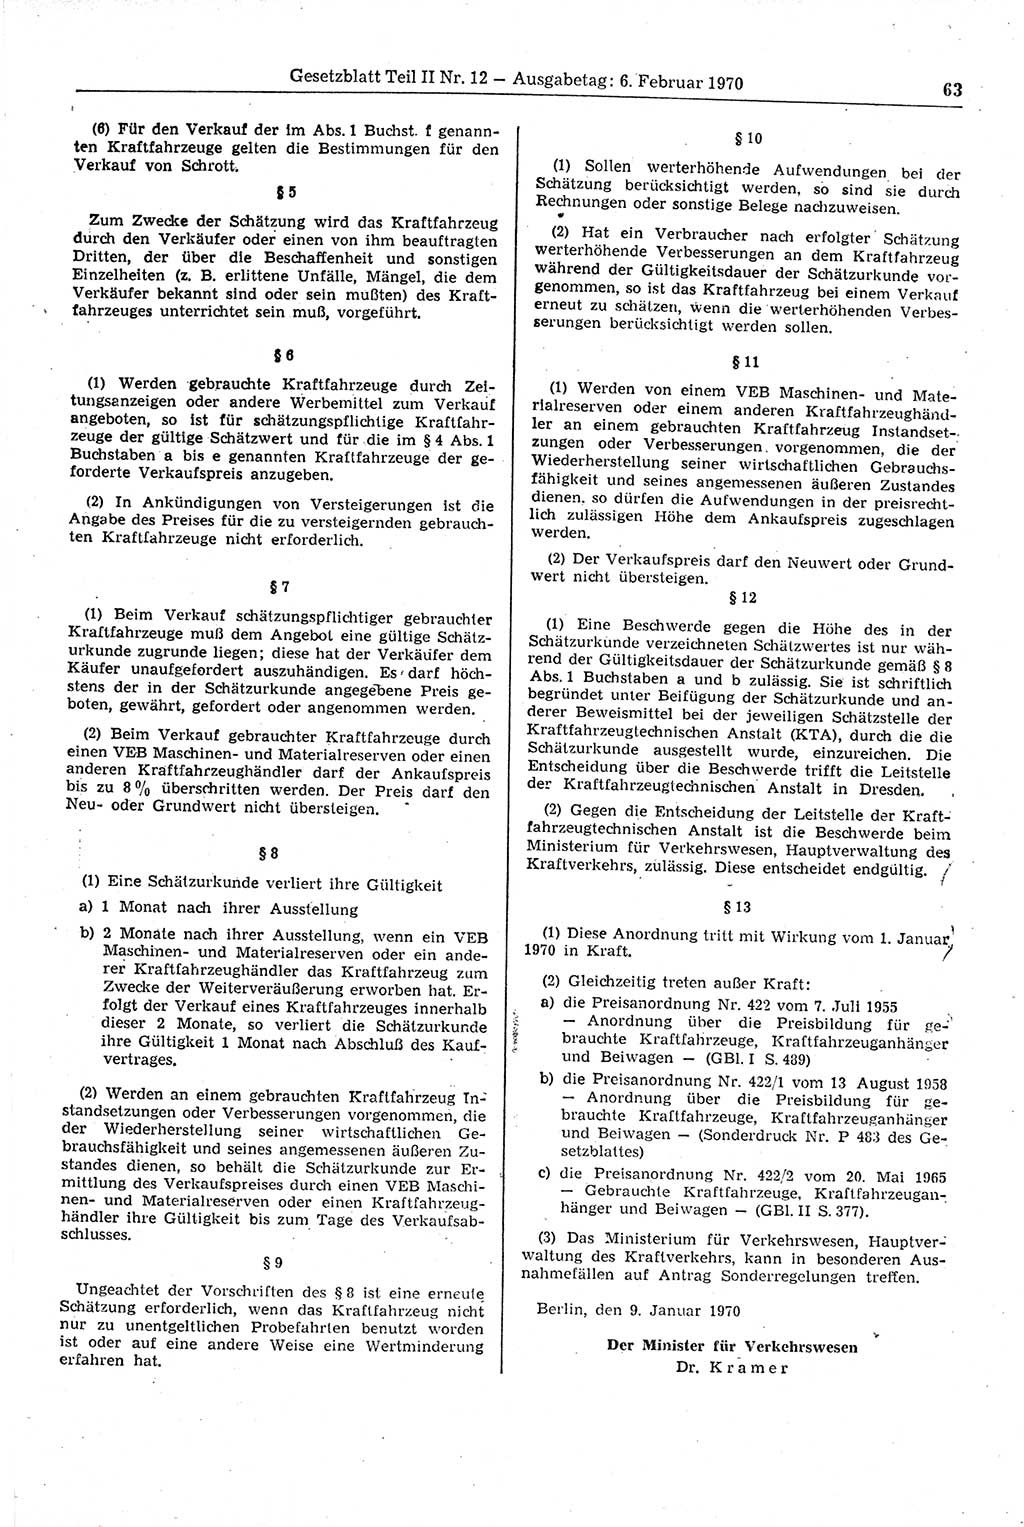 Gesetzblatt (GBl.) der Deutschen Demokratischen Republik (DDR) Teil ⅠⅠ 1970, Seite 63 (GBl. DDR ⅠⅠ 1970, S. 63)